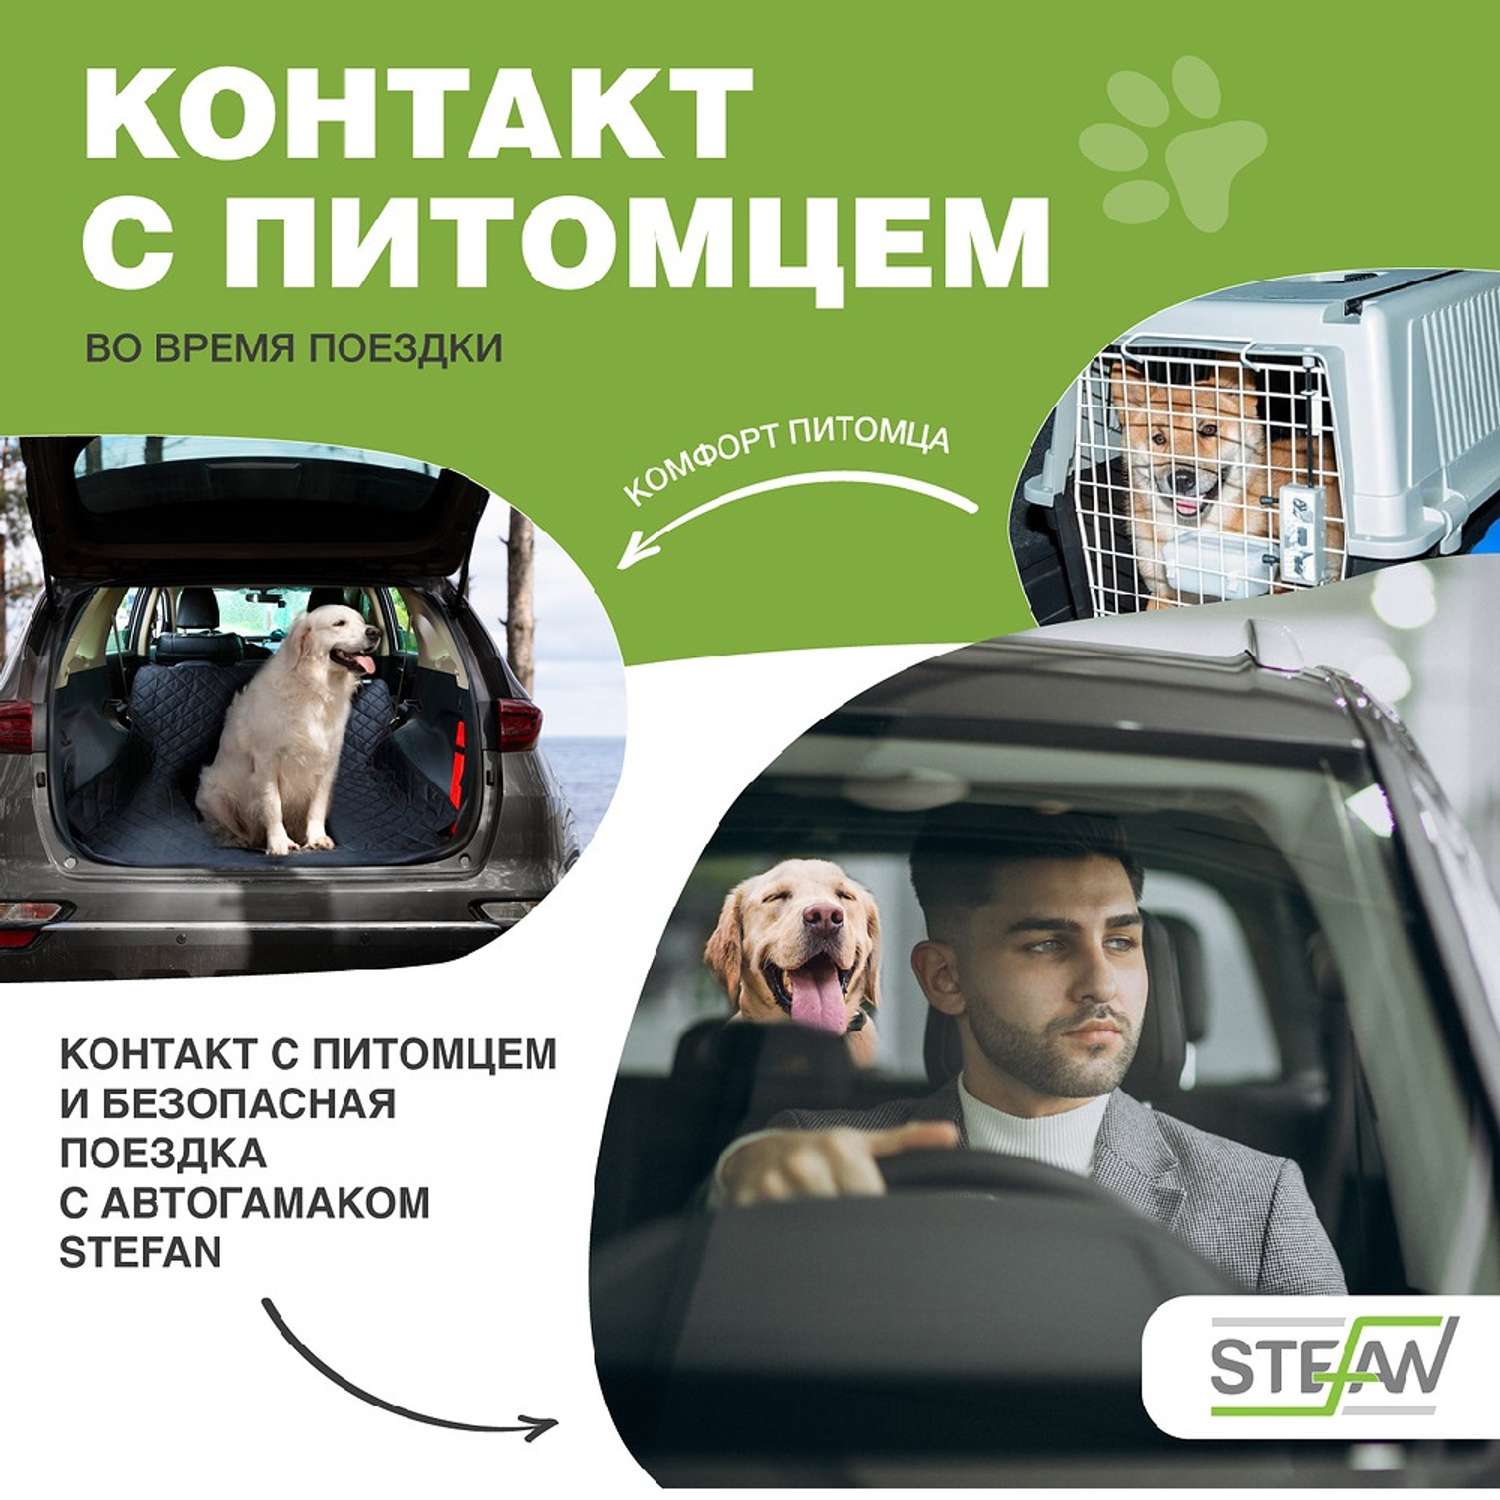 Автогамак для животных Stefan для багажника черный 135x205см - фото 5